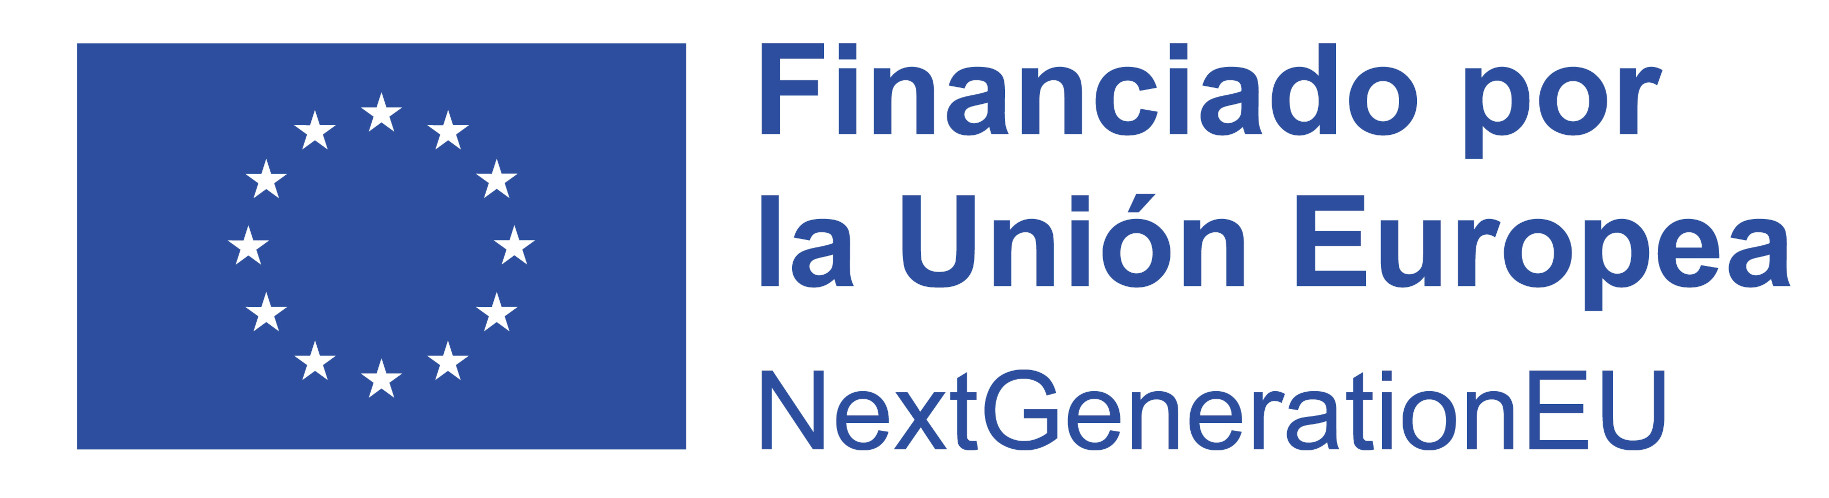 NextGenerationEU Financiado por la Unión Europea